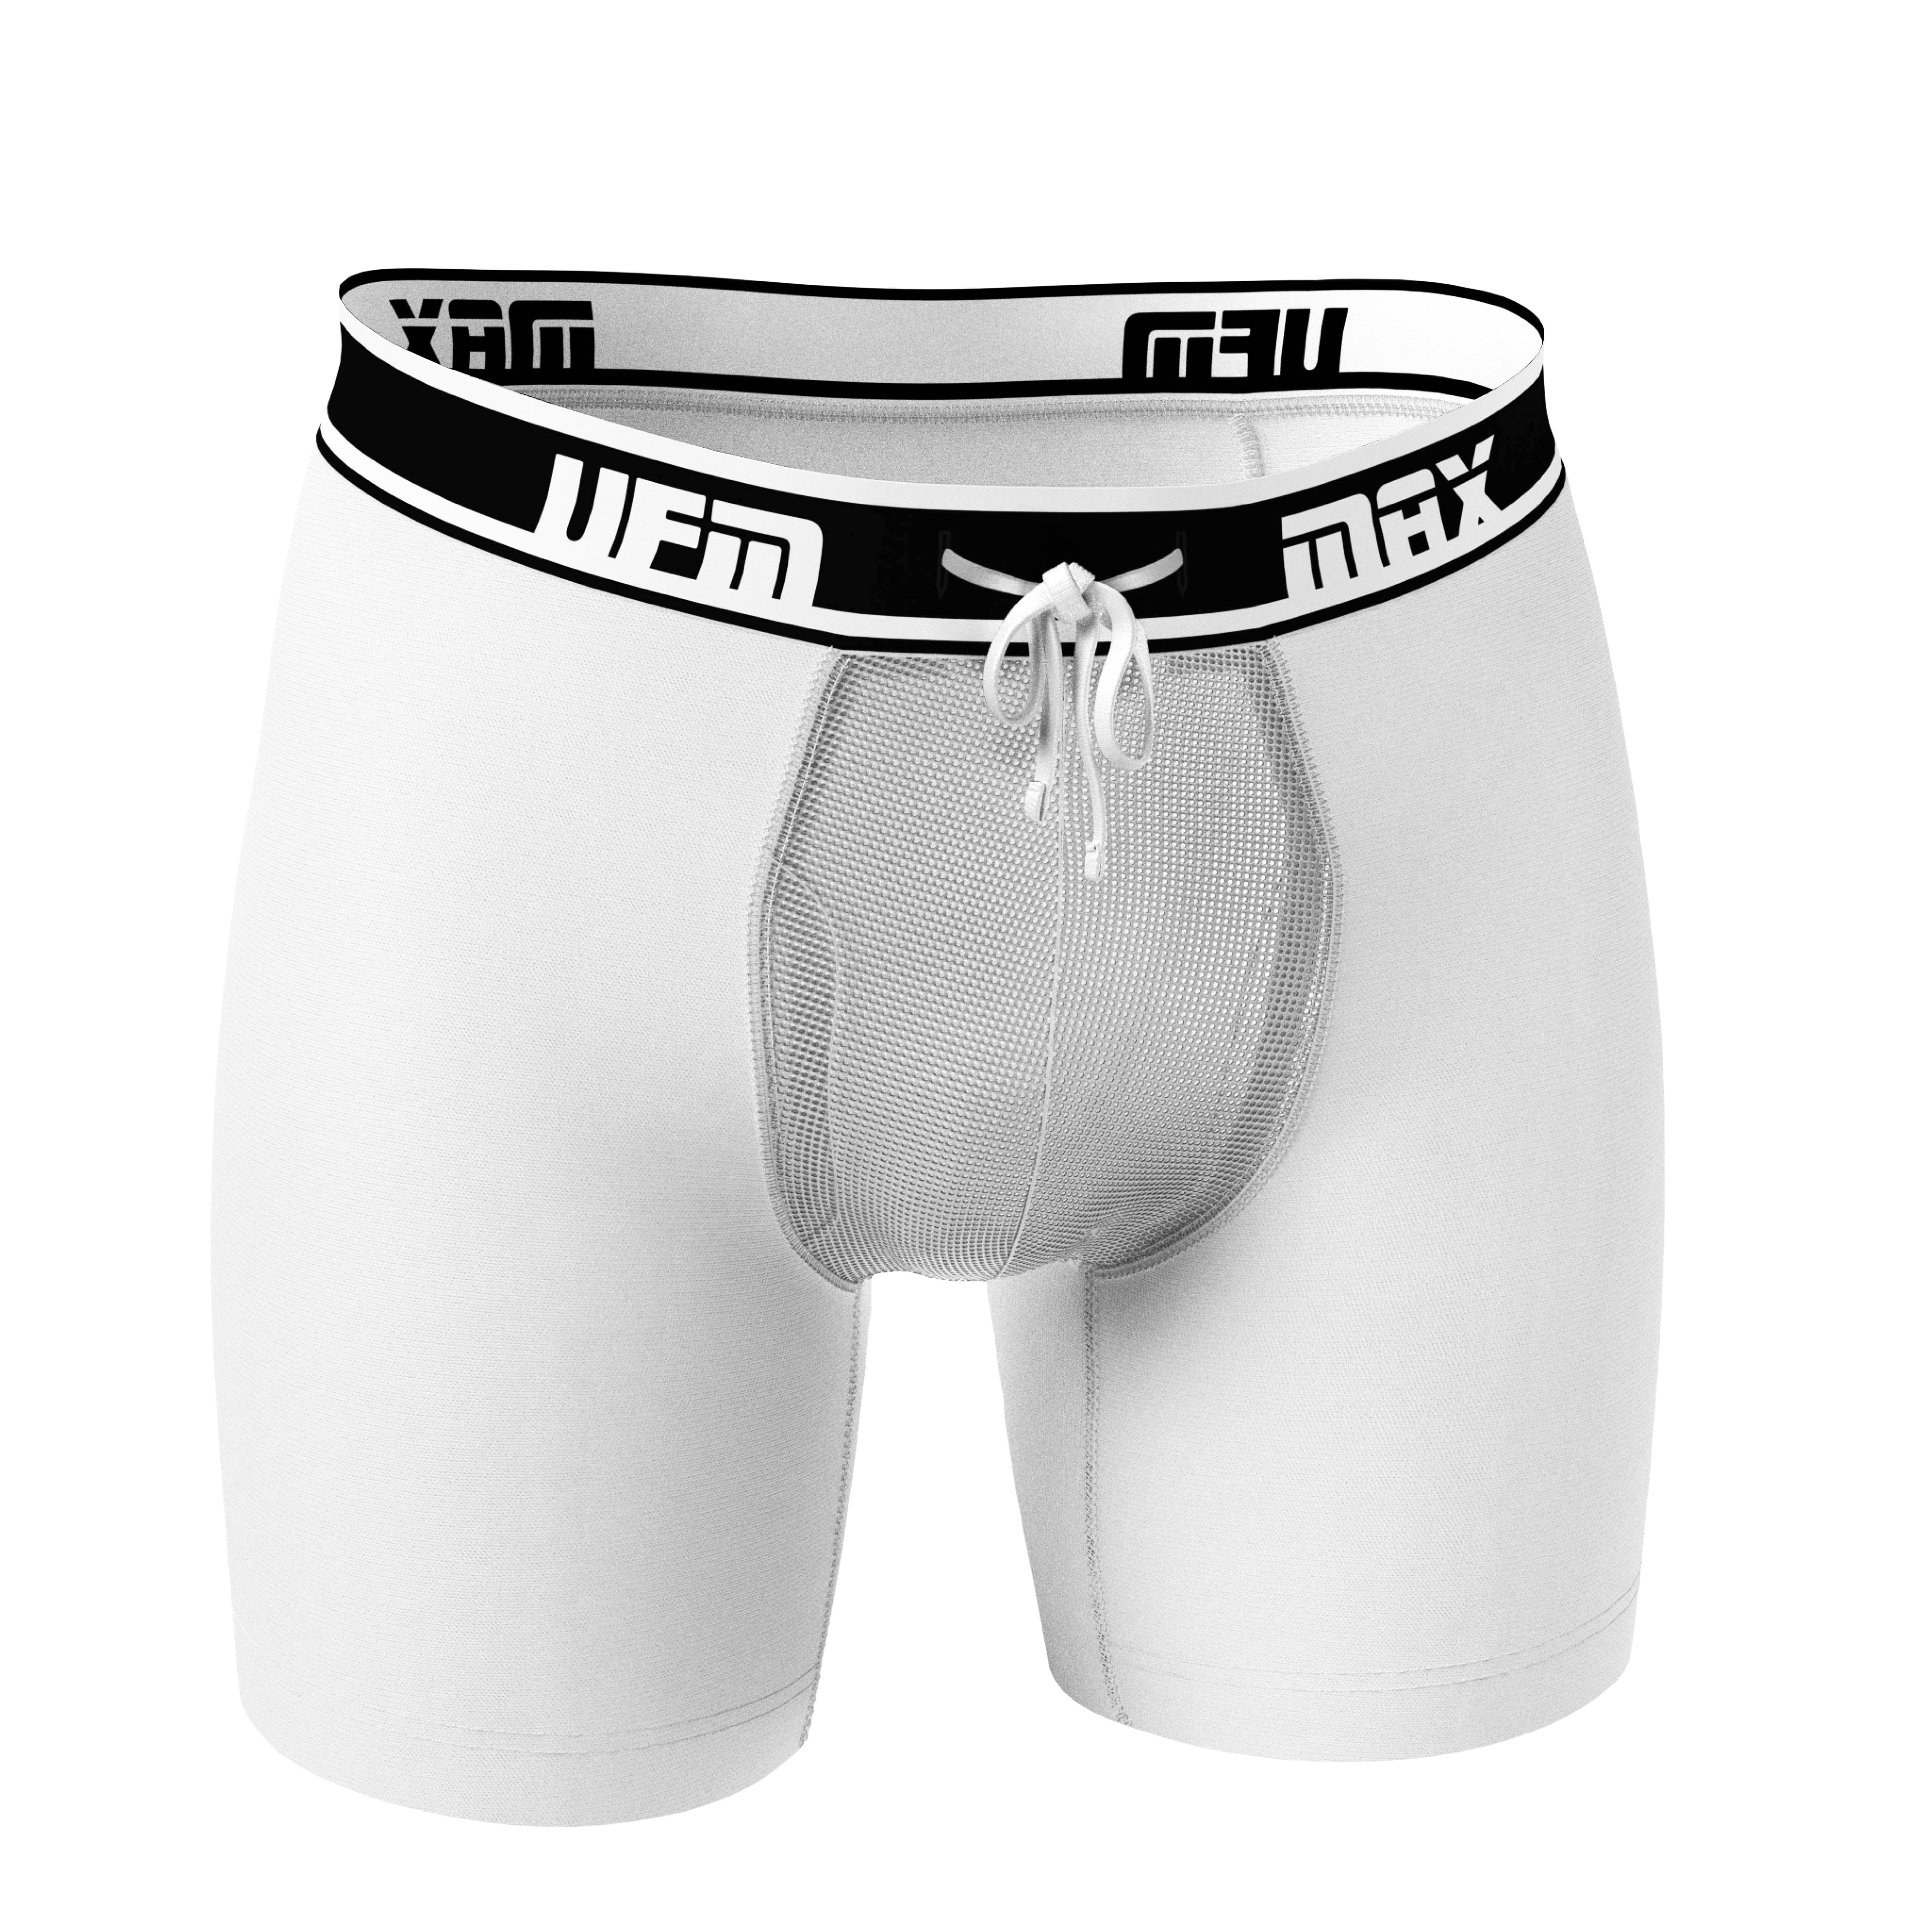 UFM (Underwear for Men) Athletic Boxer Briefs - Regular Support